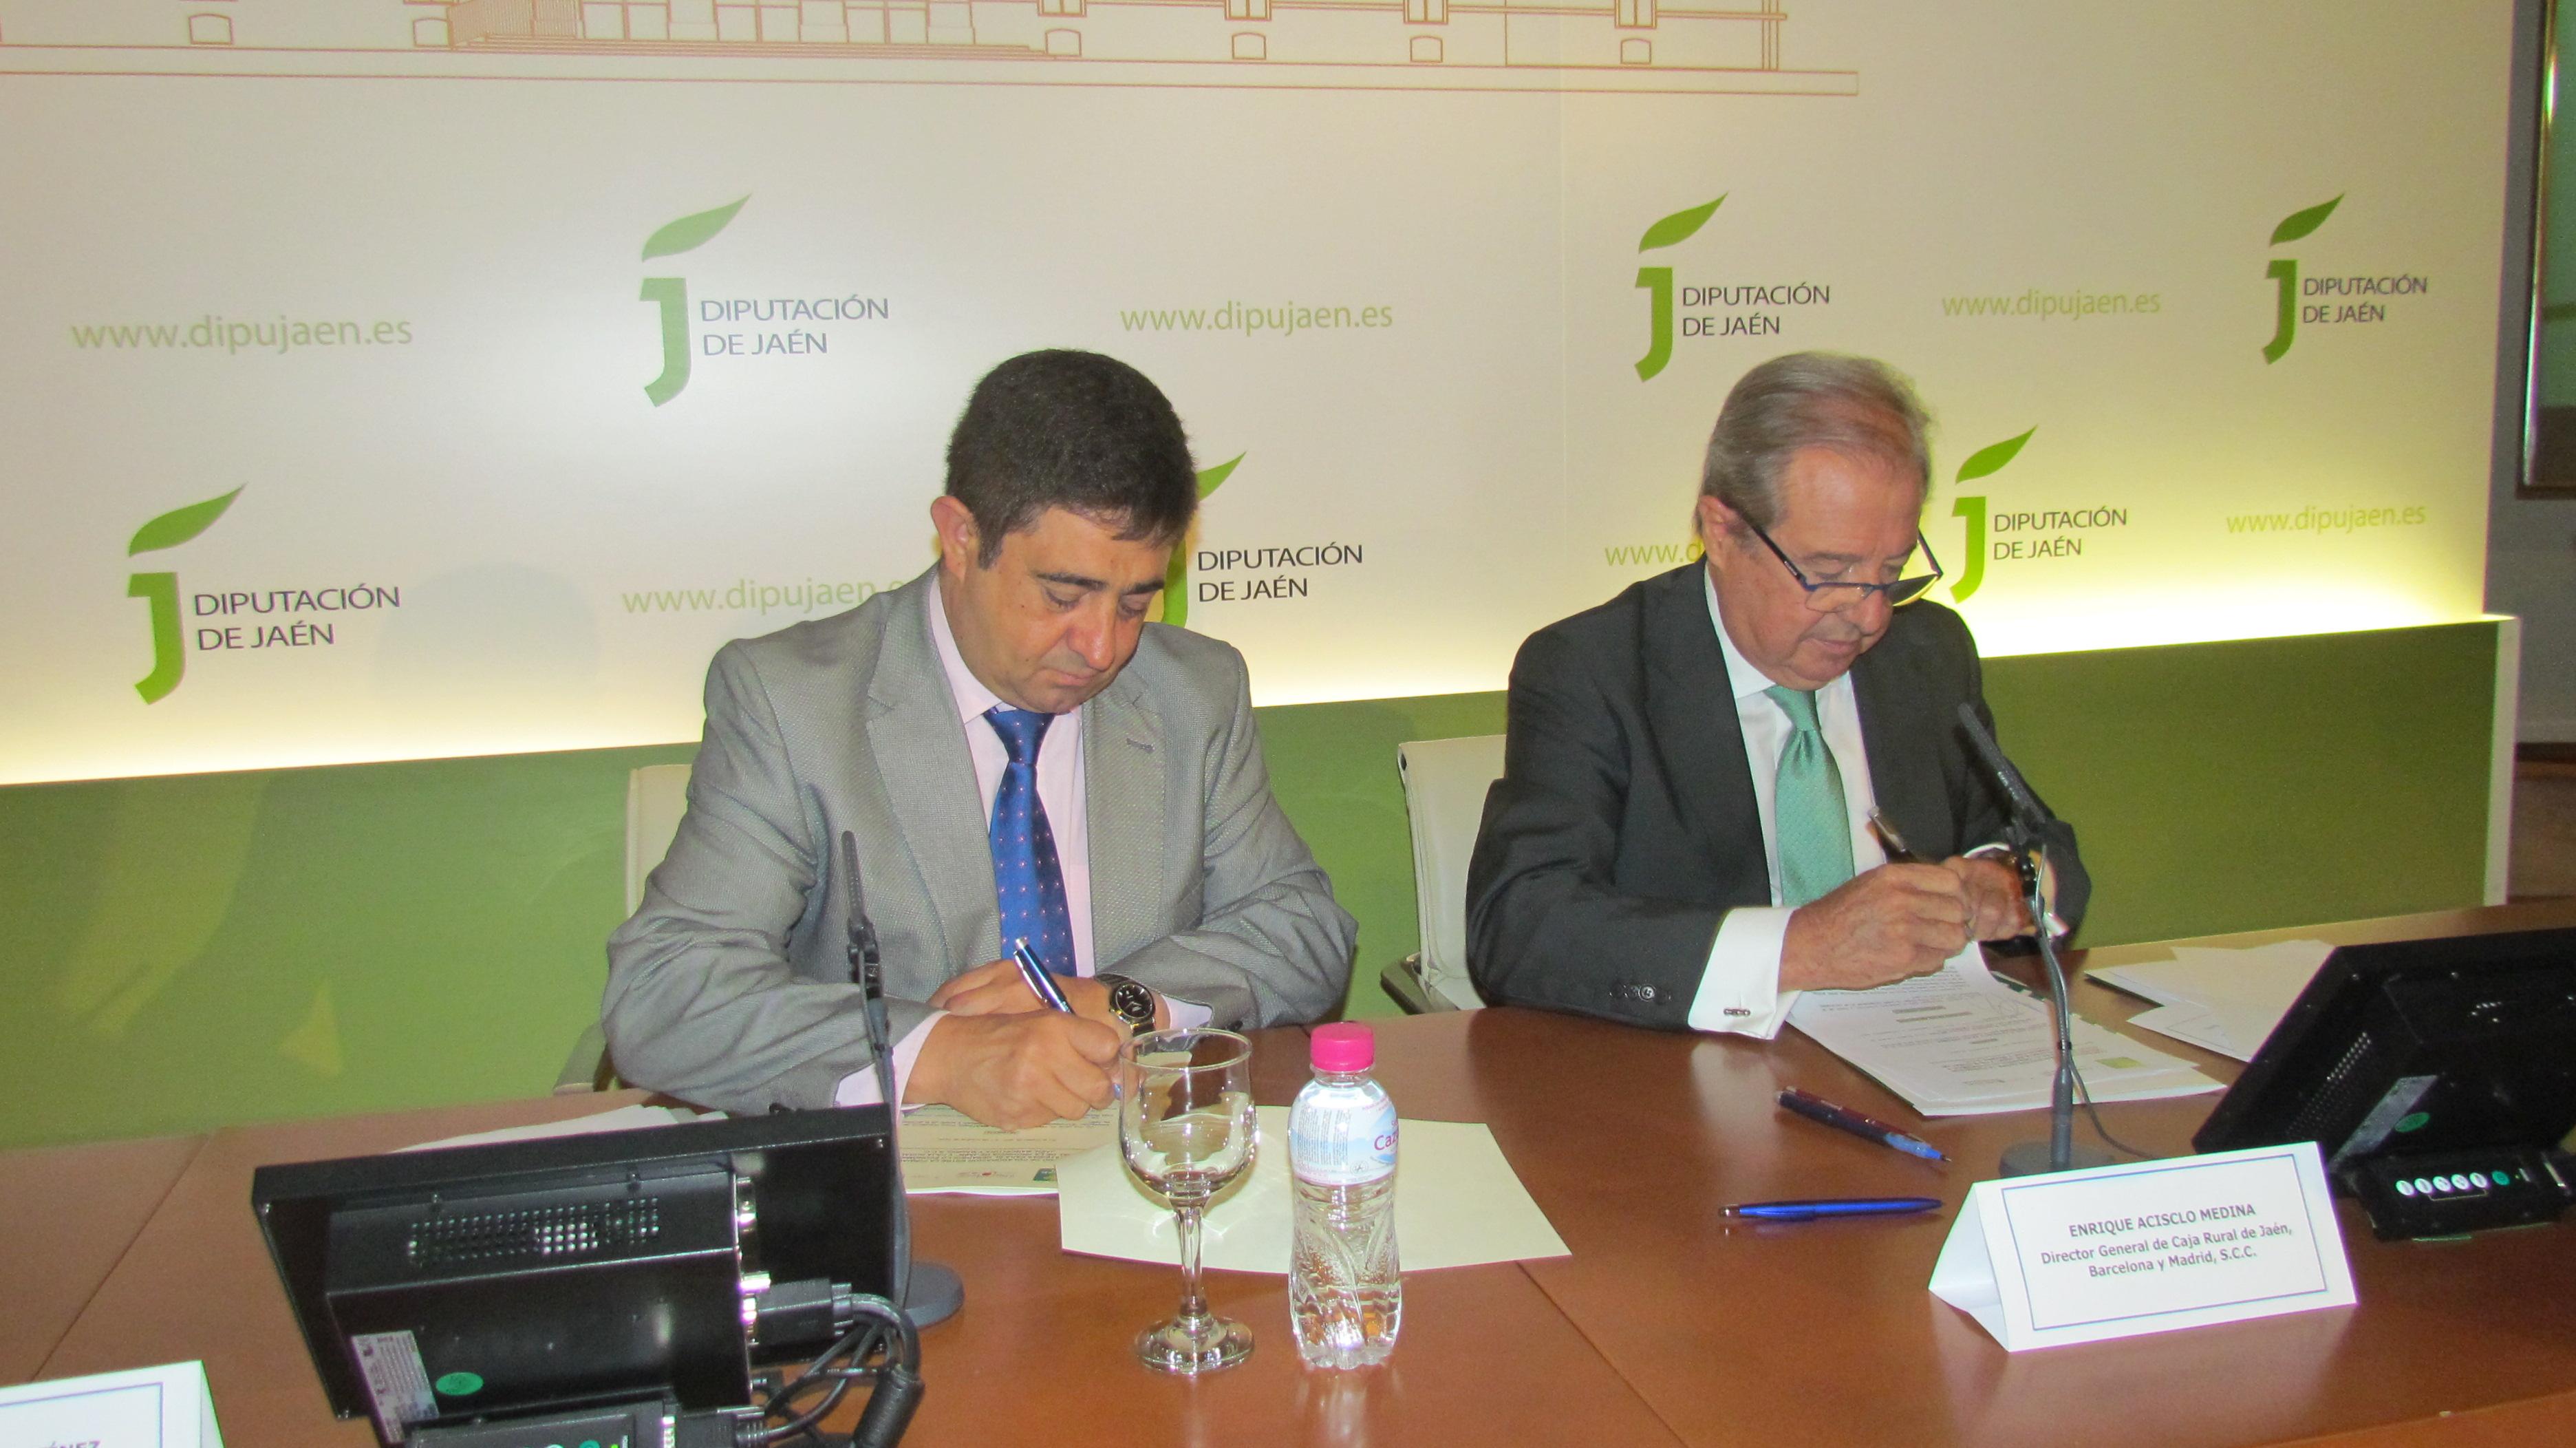 Francisco Reyes Martínez y Enrique Acisclo Medina en el momento de la firma del Convenio de Colaboración